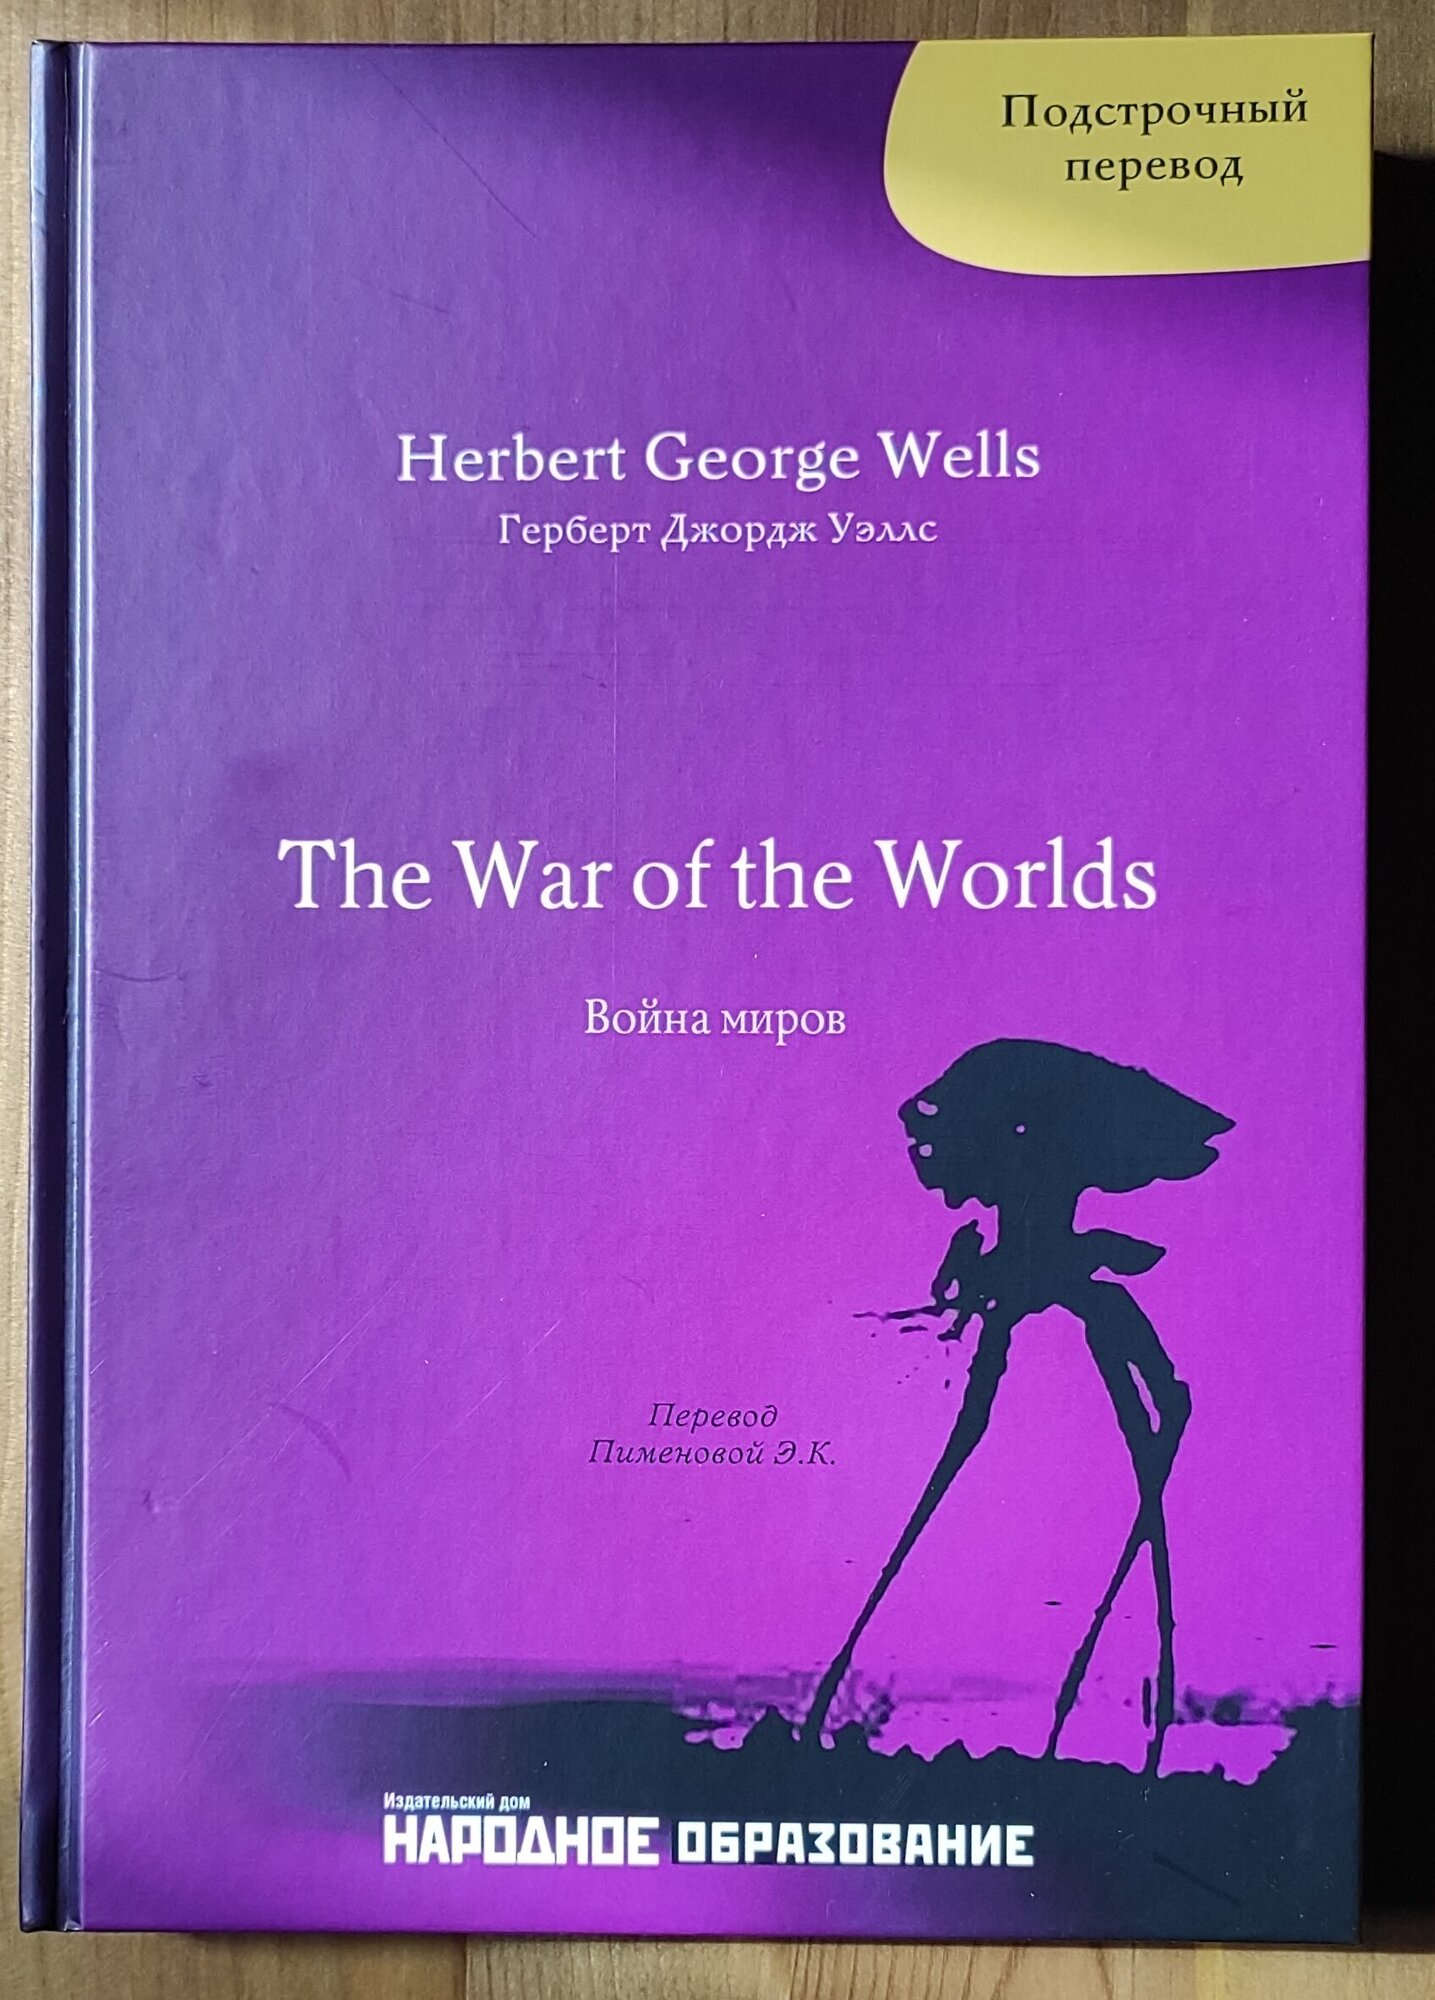 Герберт Д. Уэллс. Война миров. Подстрочный перевод с английского языка на русский. H. G. Wells. The War of the Worlds.